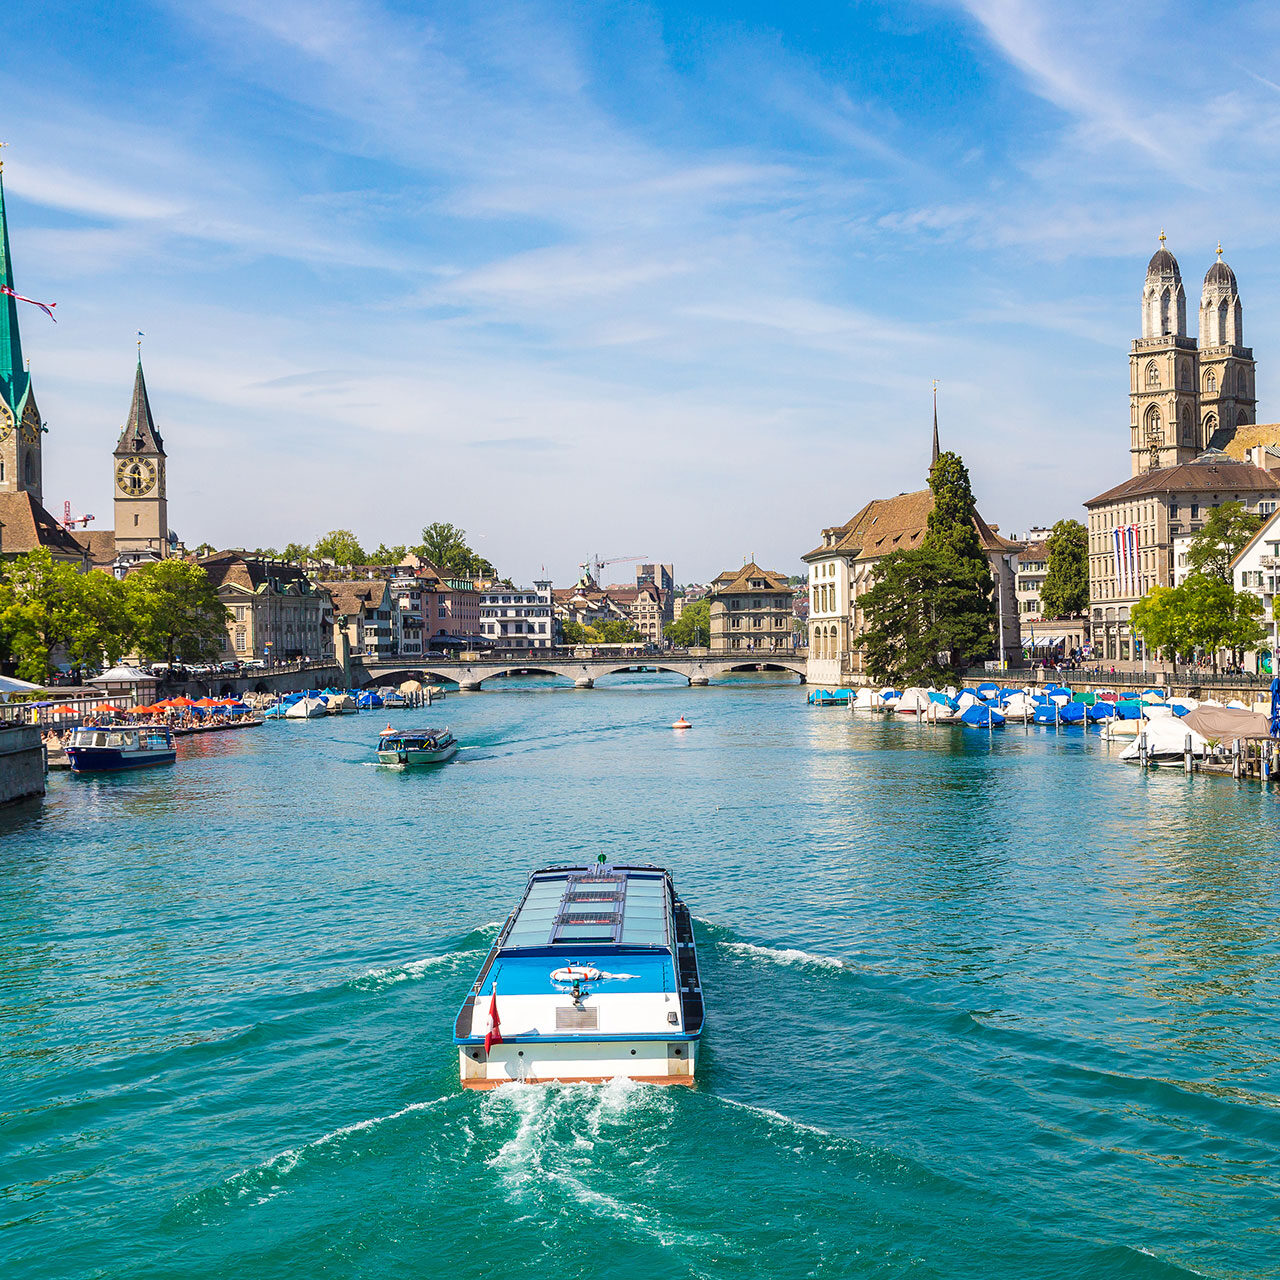 Lake-Zurich